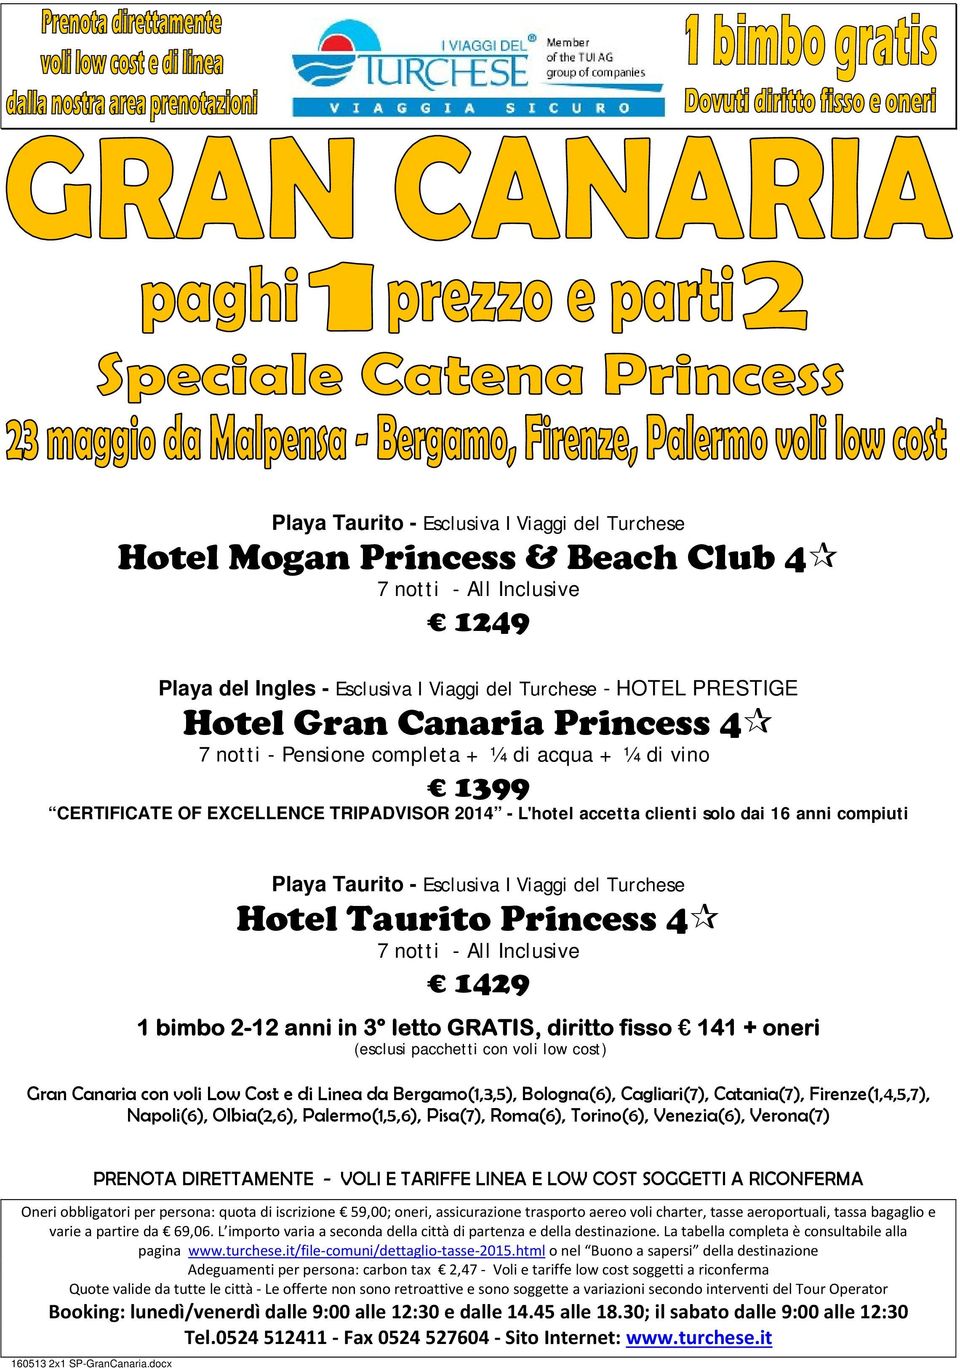 Hotel Taurito Princess 4 7 notti - 1429 1 bimbo 2-12 anni in 3 letto GRATIS, diritto fisso 141 + oneri Gran Canaria con voli Low Cost e di Linea da Bergamo(1,3,5), Bologna(6), Cagliari(7),